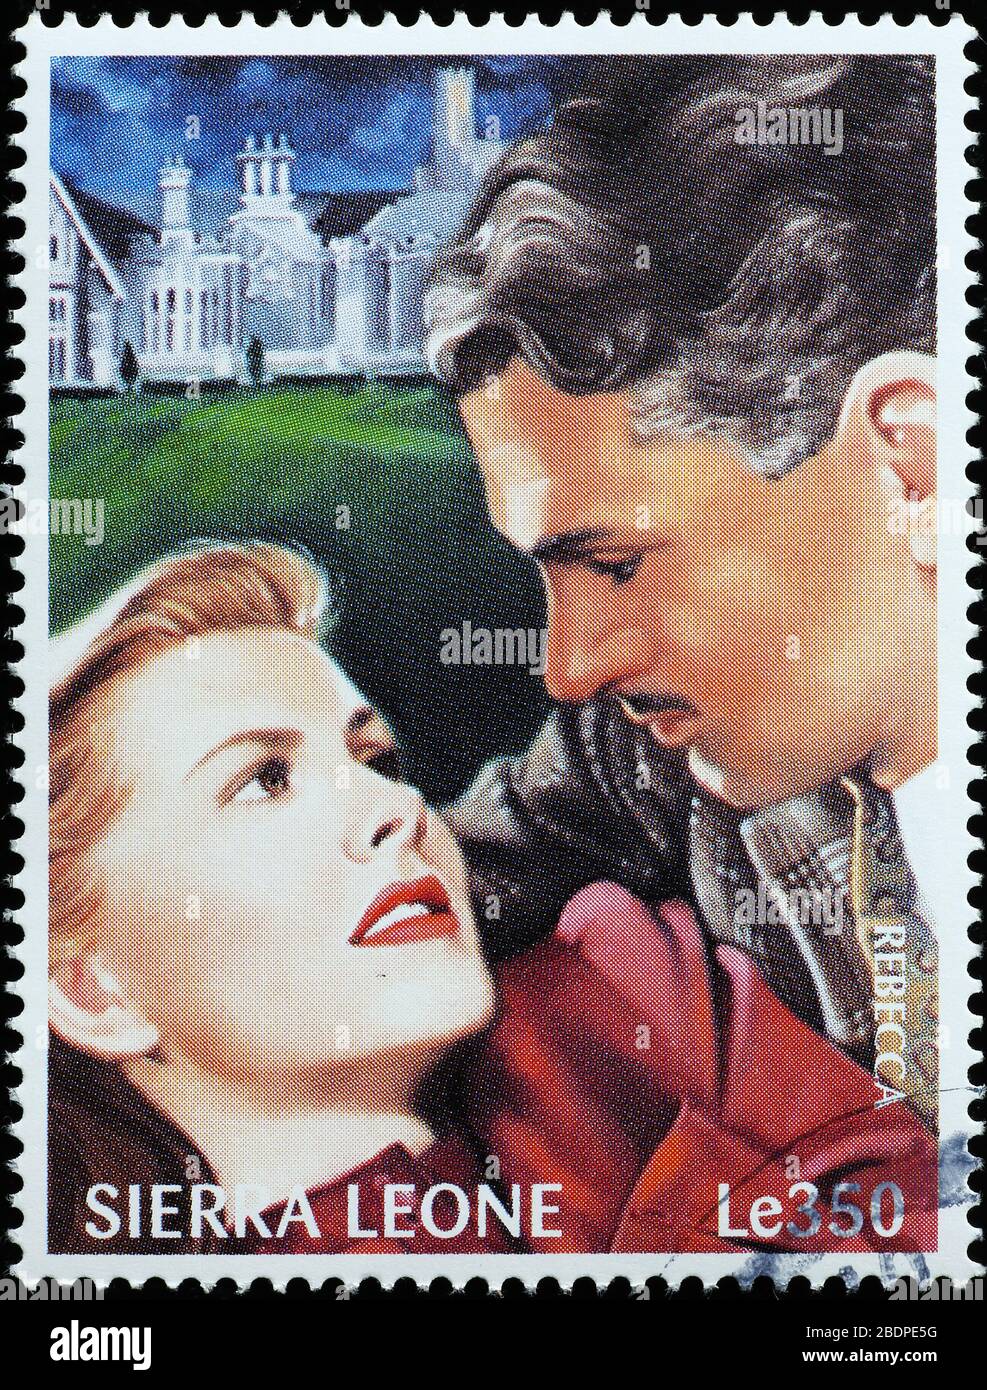 Szene aus Rebecca von Hitchcock auf Briefmarke Stockfoto